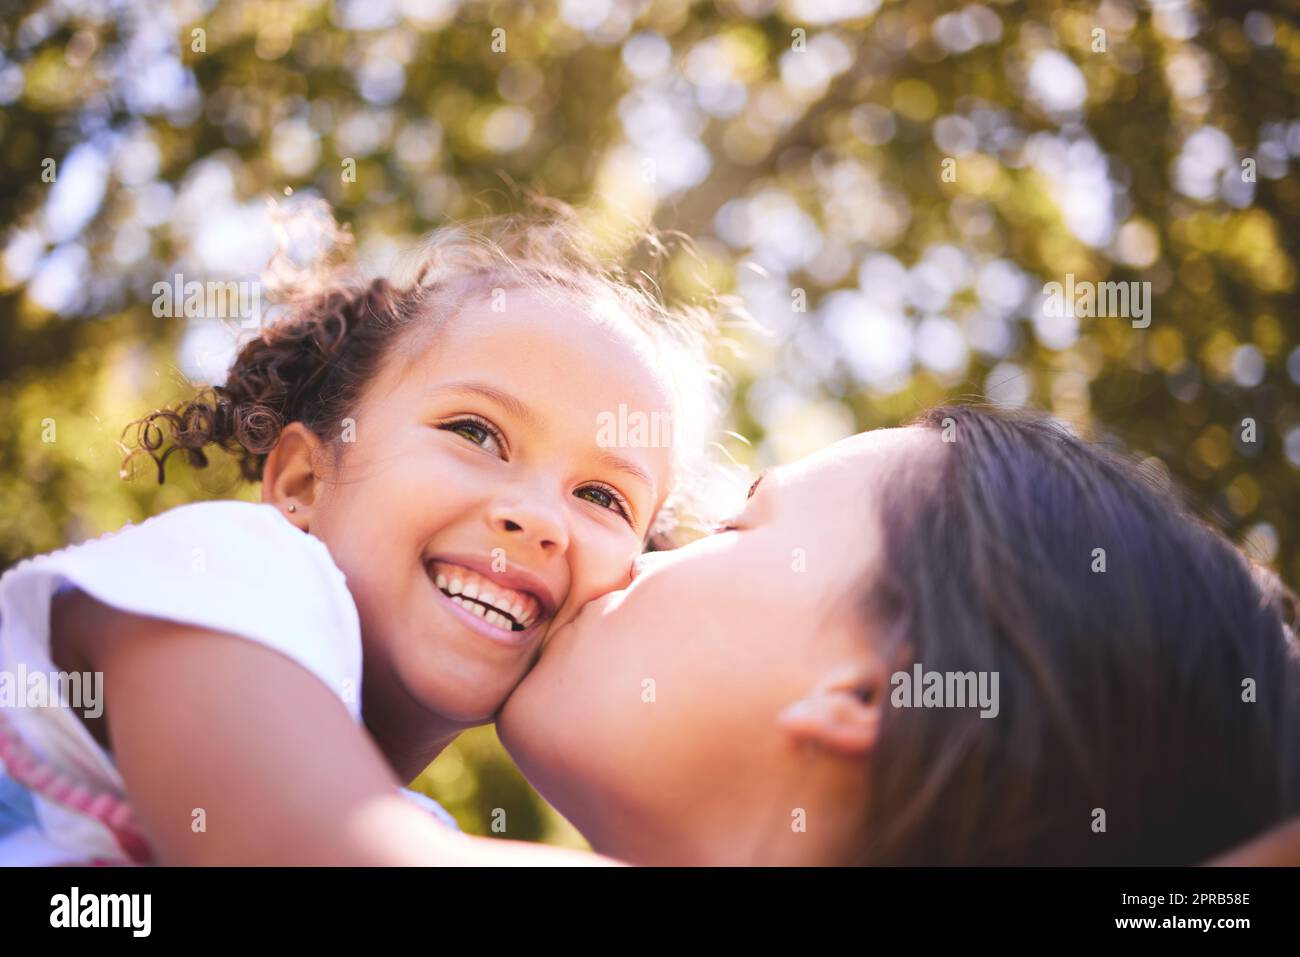 Ich verbringe gerne Zeit draußen mit dir. Eine junge Mutter küsst ihre Tochter liebevoll auf die Wange. Stockfoto